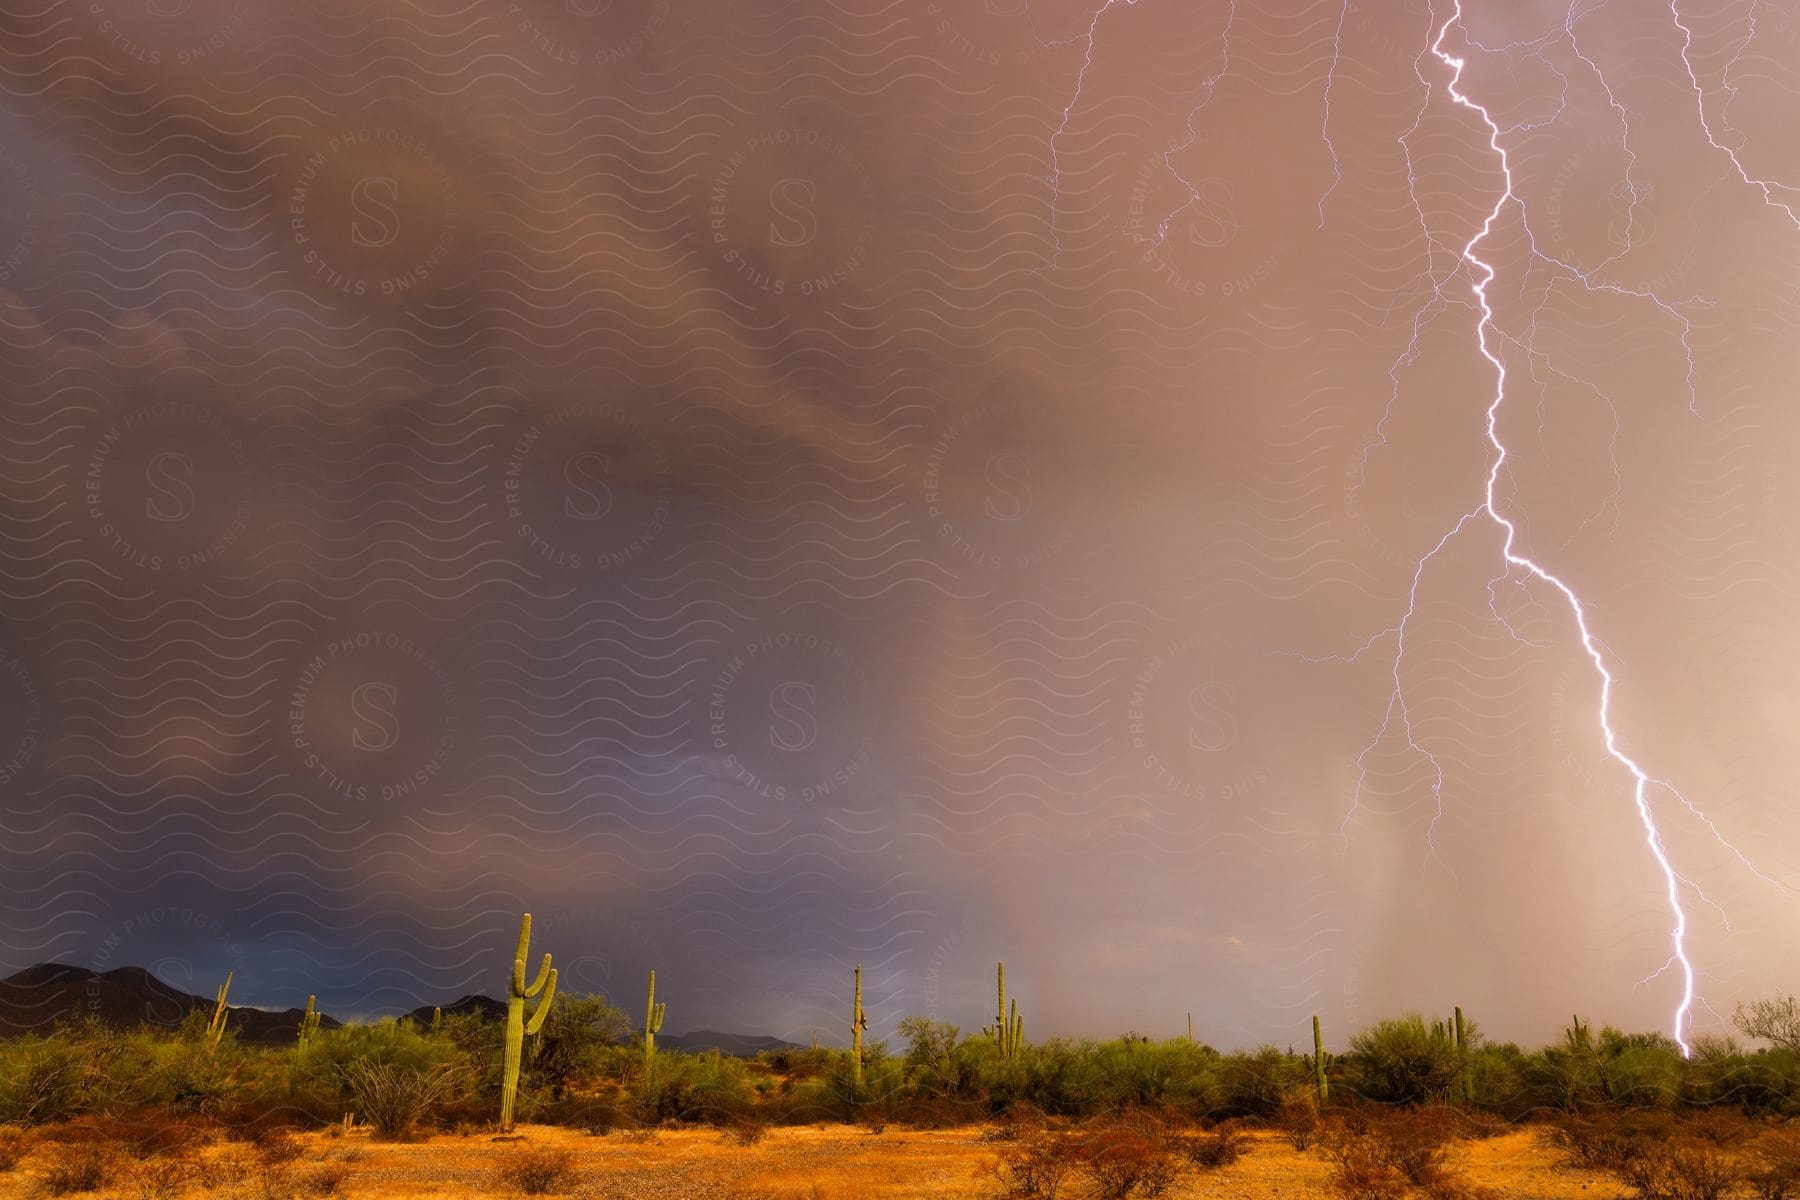 lightning flashing in the sky in the desert